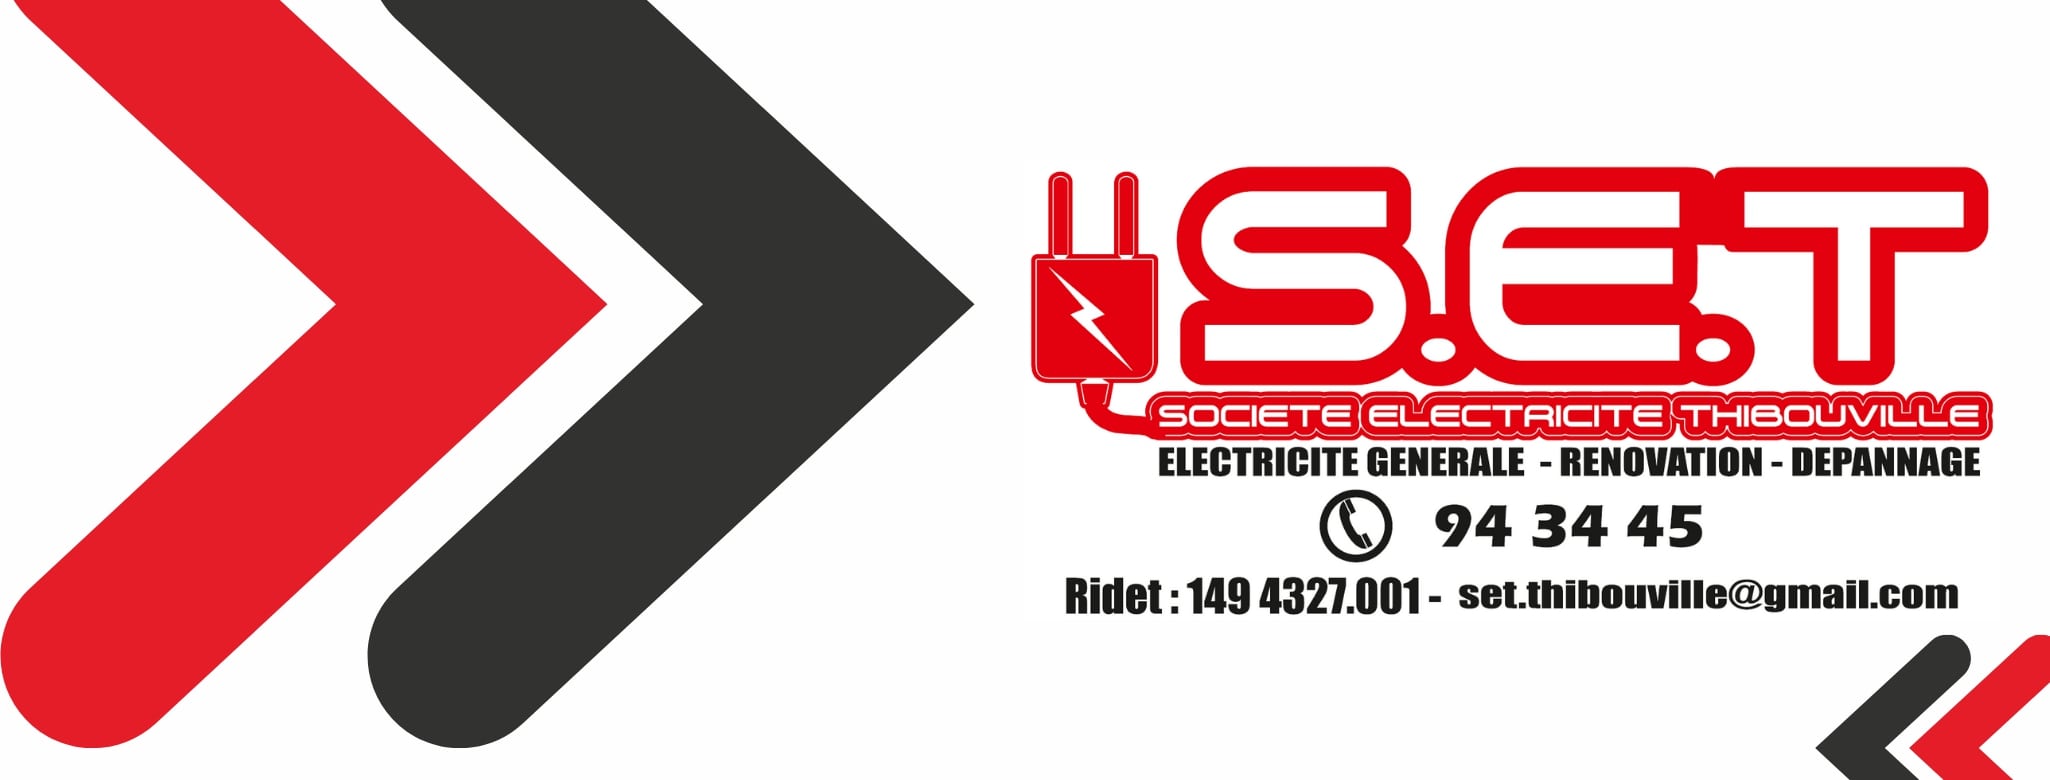 logo de SET - Société d'Electricité Thibouville